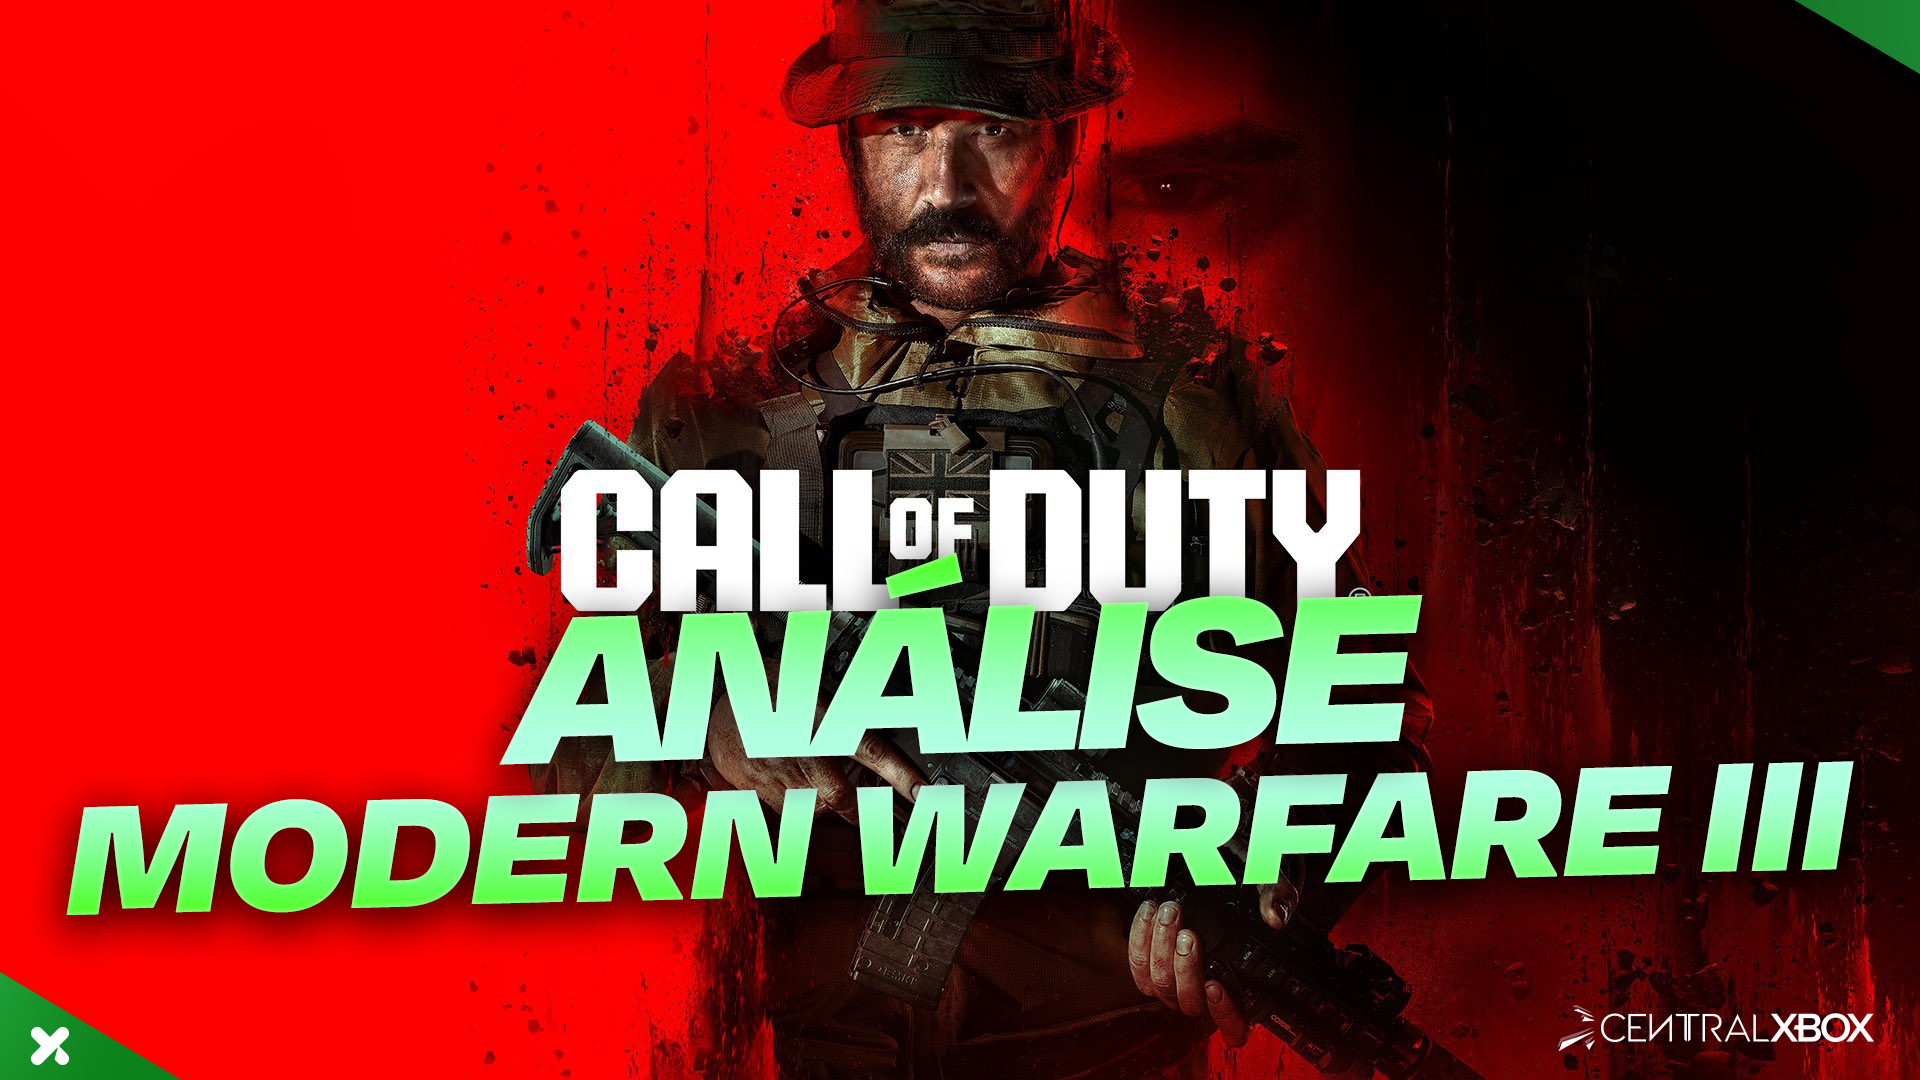 Call of Duty: Modern Warfare 2: tudo o que você precisa saber sobre o Jogo  por Ranking - PSX Brasil